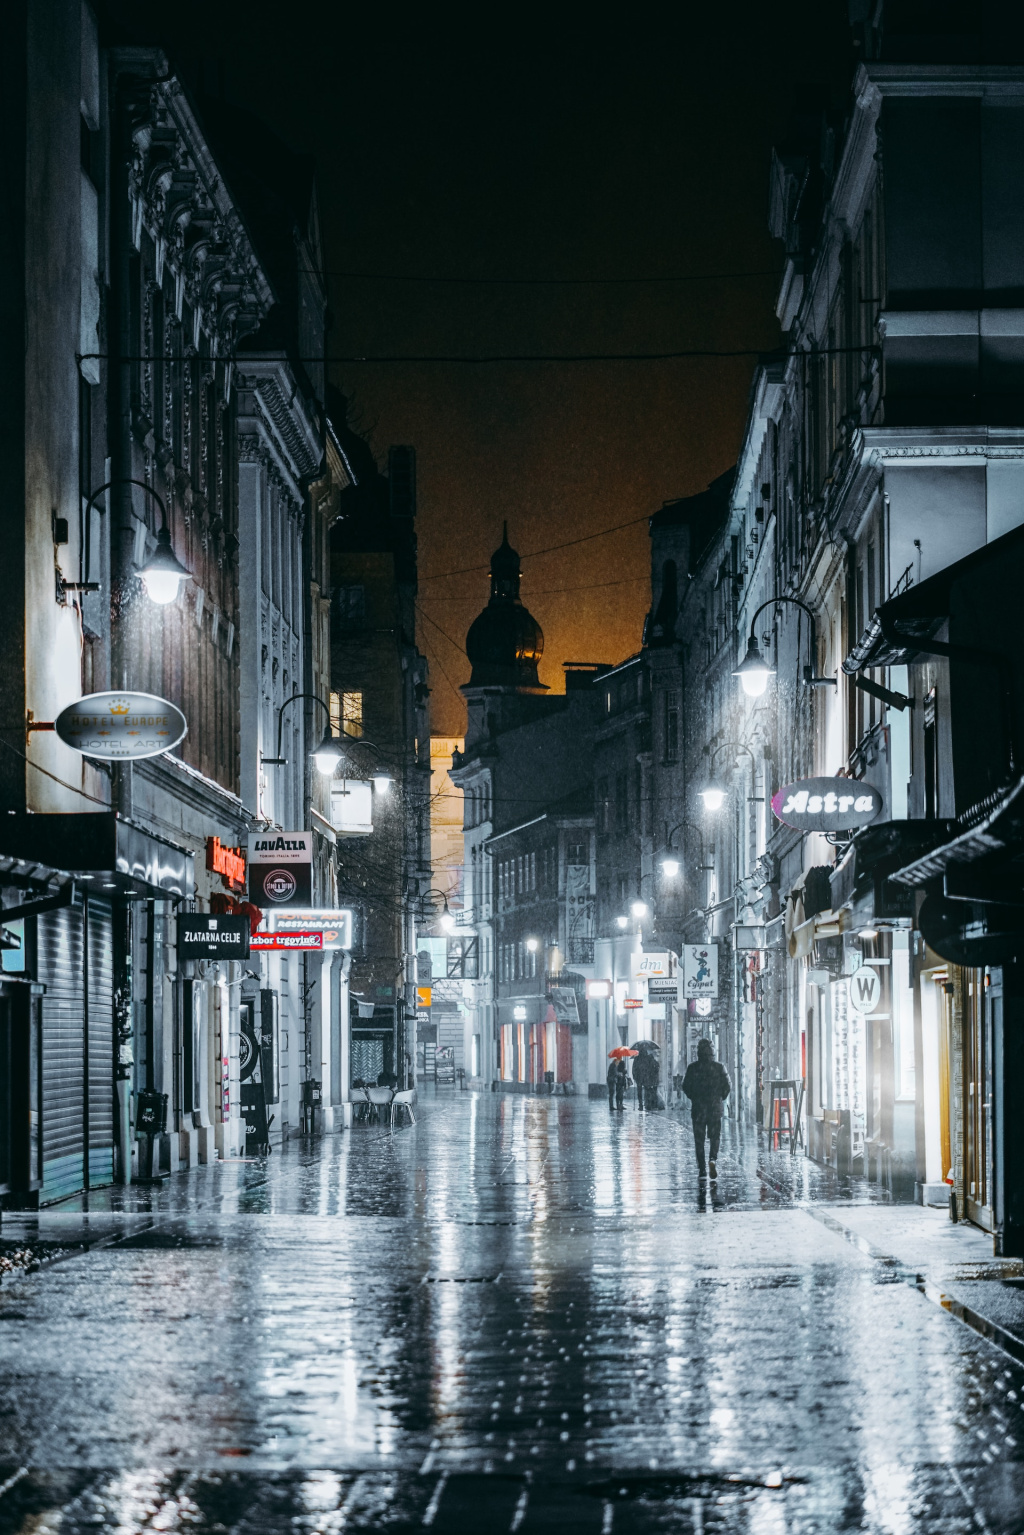 [GALERIE FOTO] De ce merită să vizitezi Sarajevo, nestemata ascunsă a Europei de Est cu prețuri mult sub cele din România